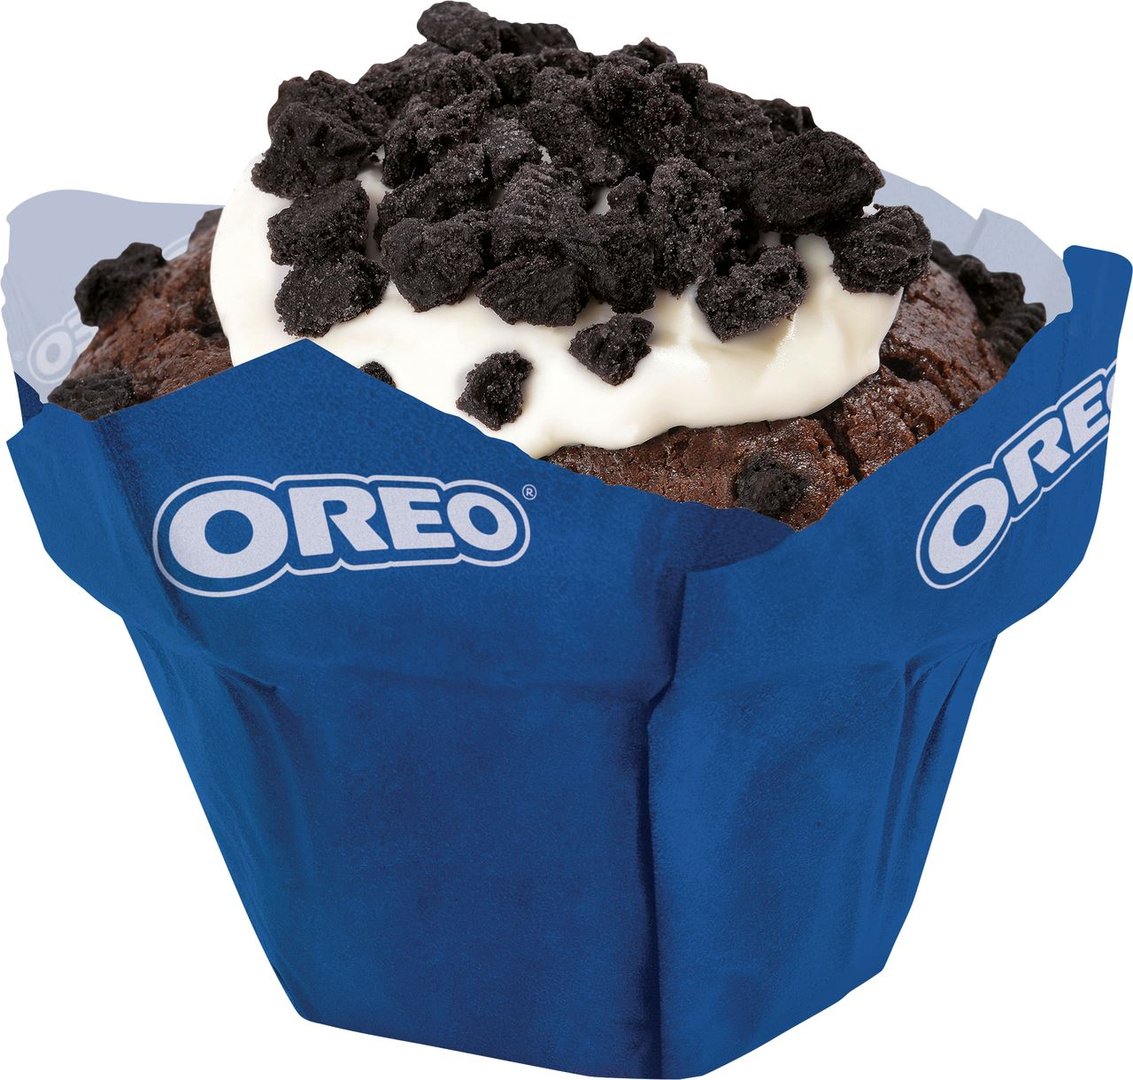 Oreo - Muffin gefüllt, Juni 2019 - 3 x 12 Stück à 110 g Packungen